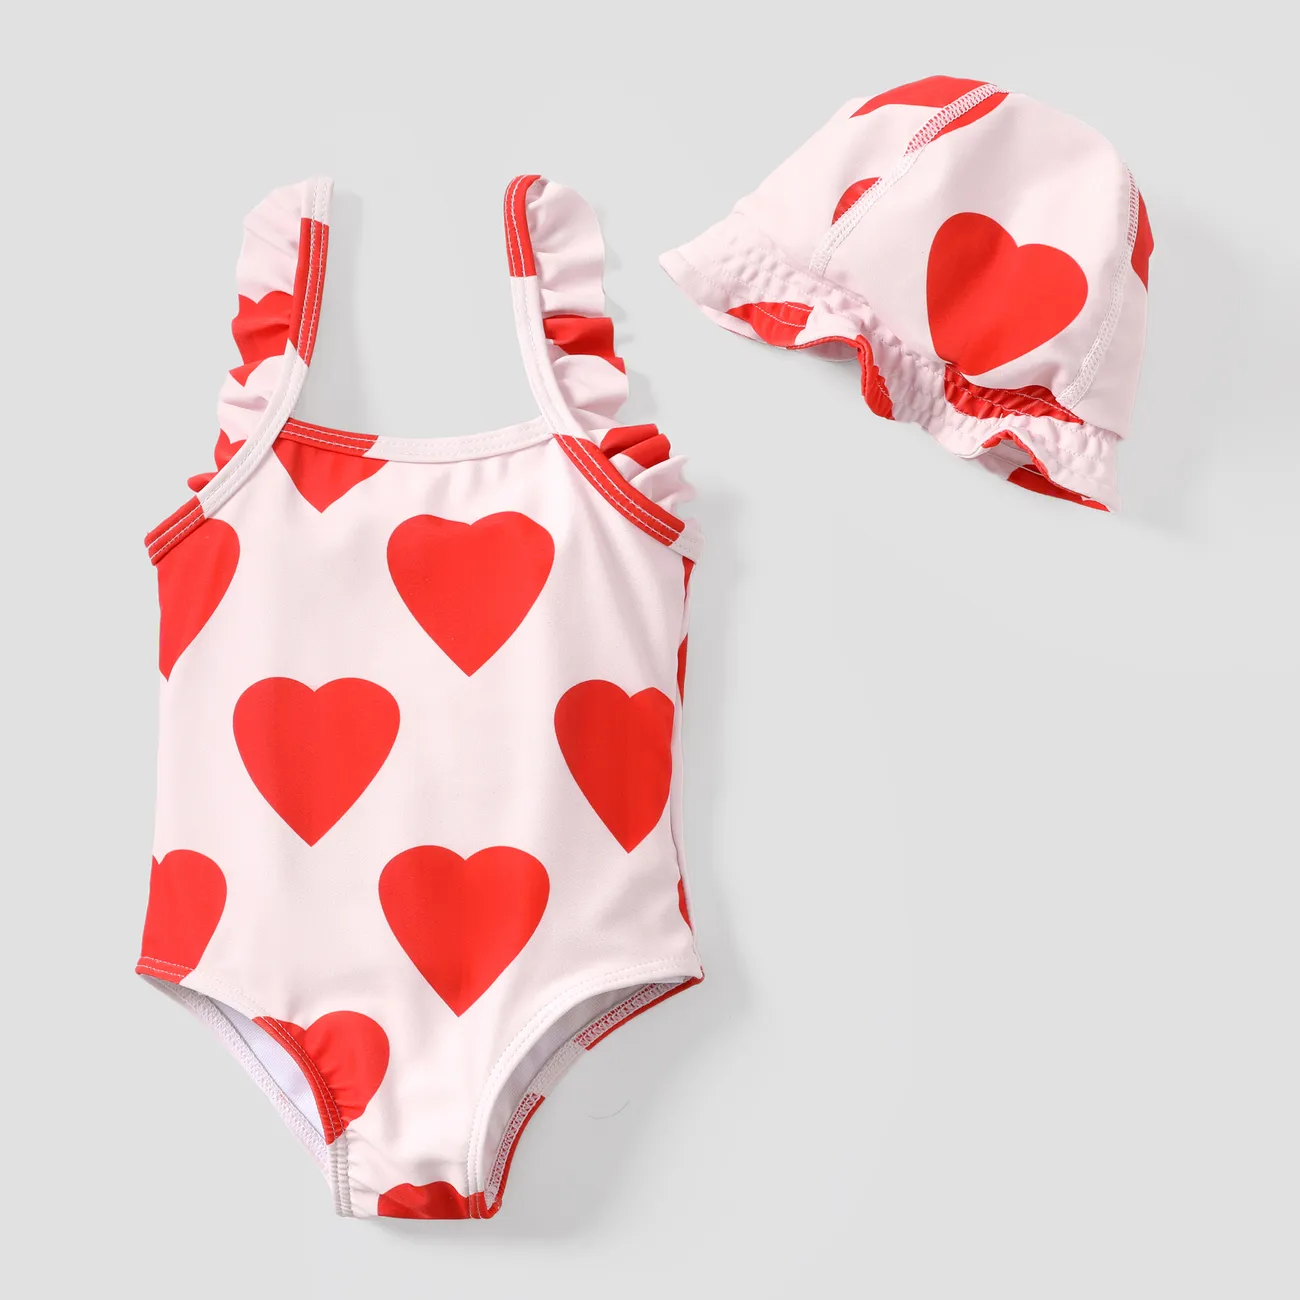 2件套嬰幼兒甜蜜心形荷葉邊泳衣套裝 紅色 big image 1